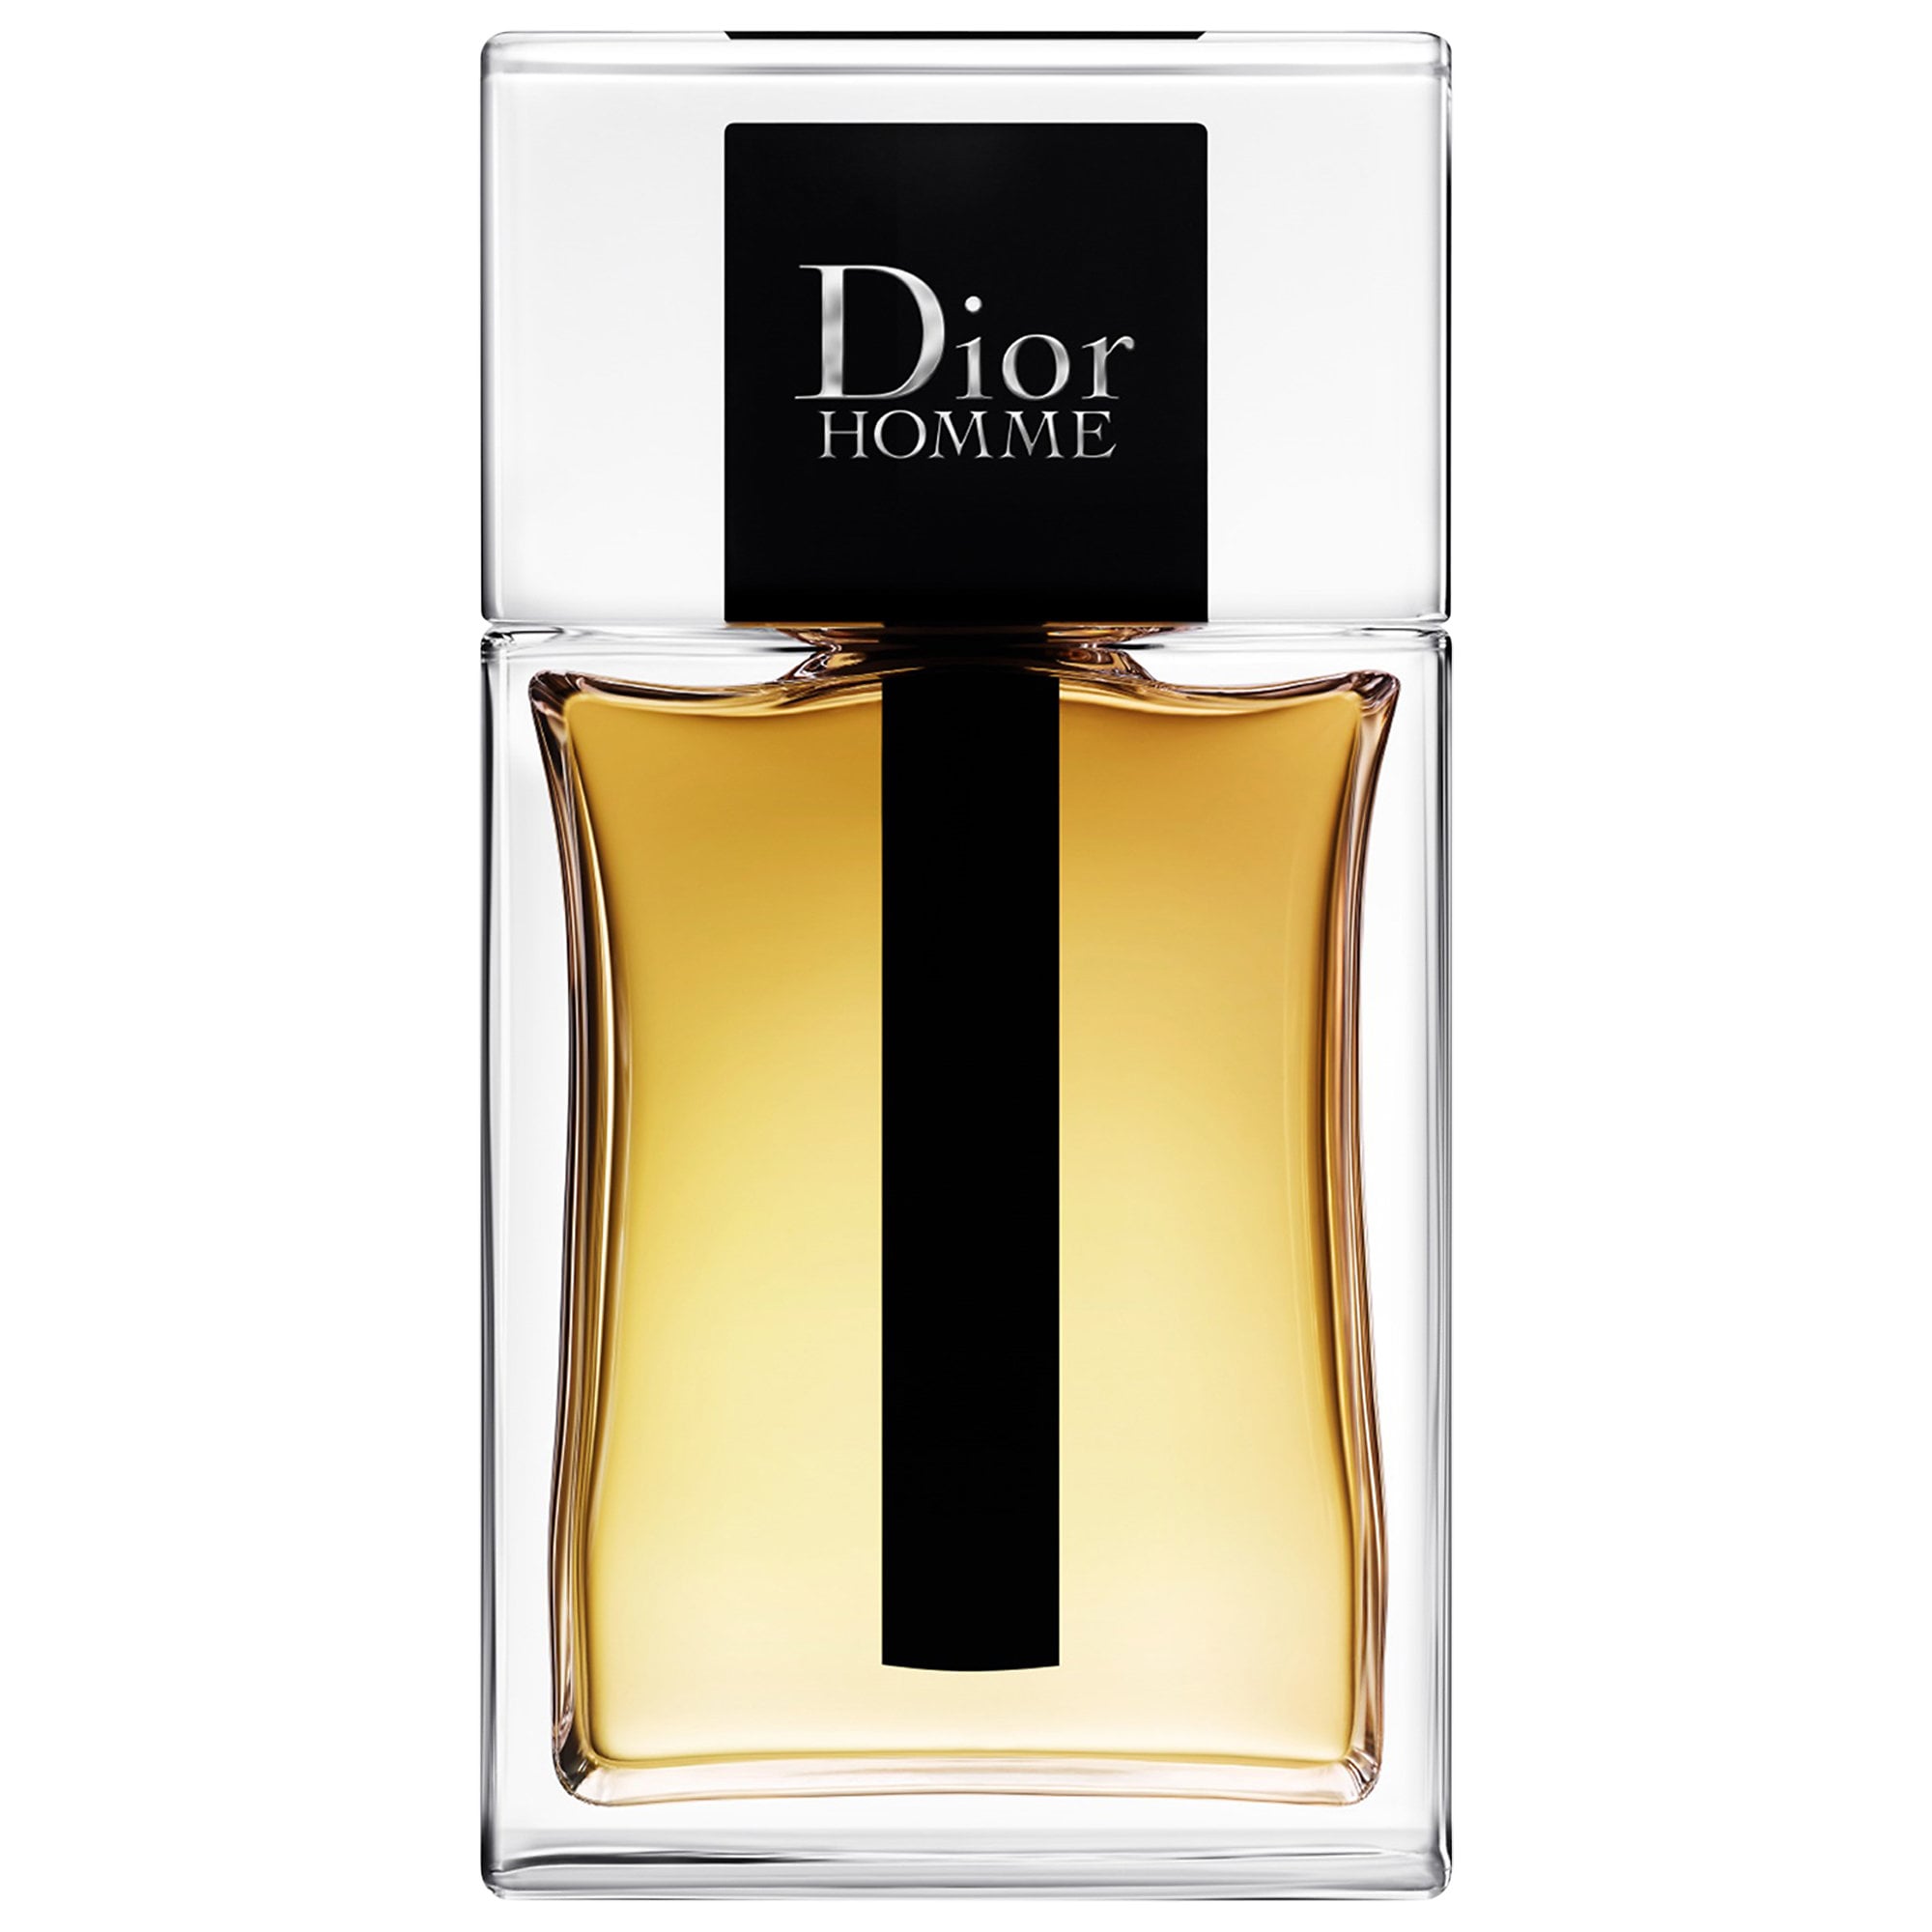 Кристиан диор мужской парфюм. Christian Dior Dior homme. Christian Dior homme, 100 ml. Christian Dior homme intense. Dior homme EDT 100ml.